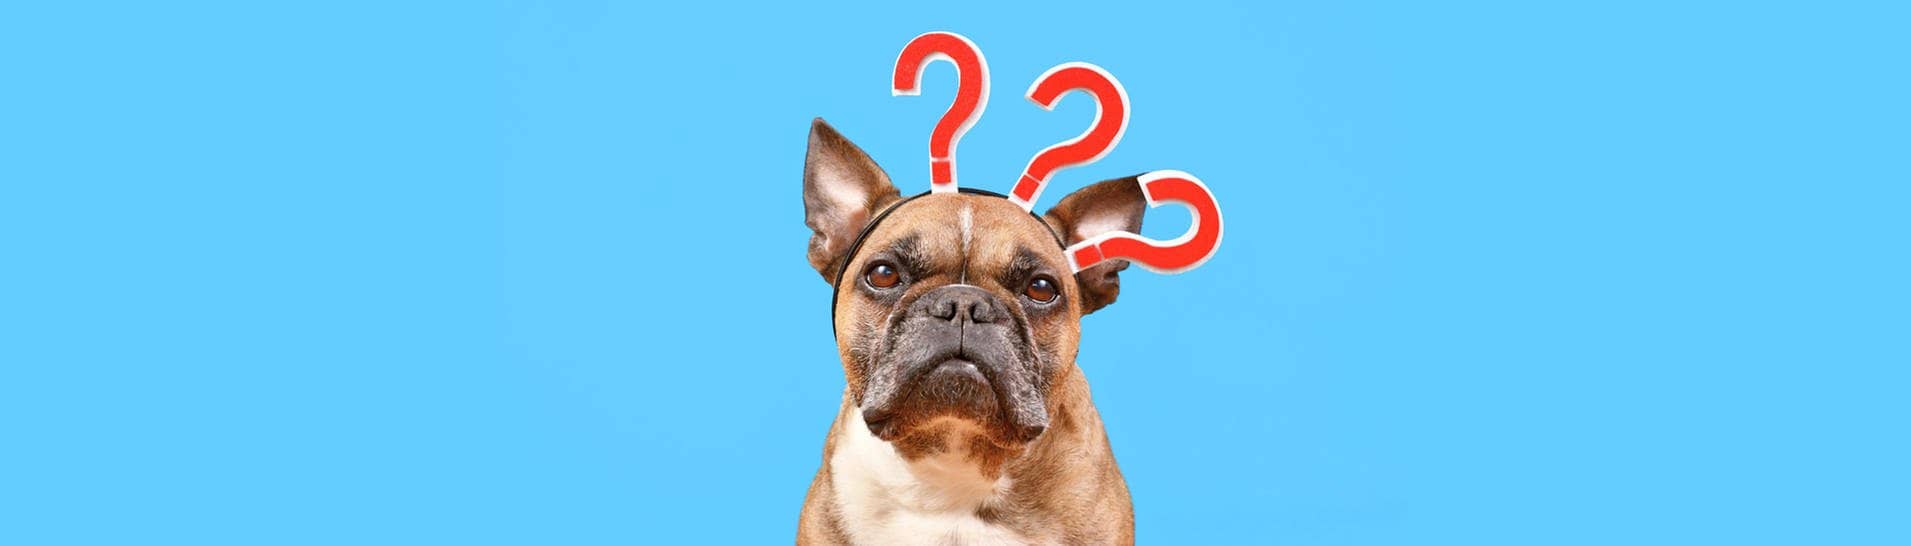 Französische Bulldogge blickt verwirrt drein und hat drei Fragezeichen auf dem Kopf (Foto: IMAGO, IMAGO / imagebroker)